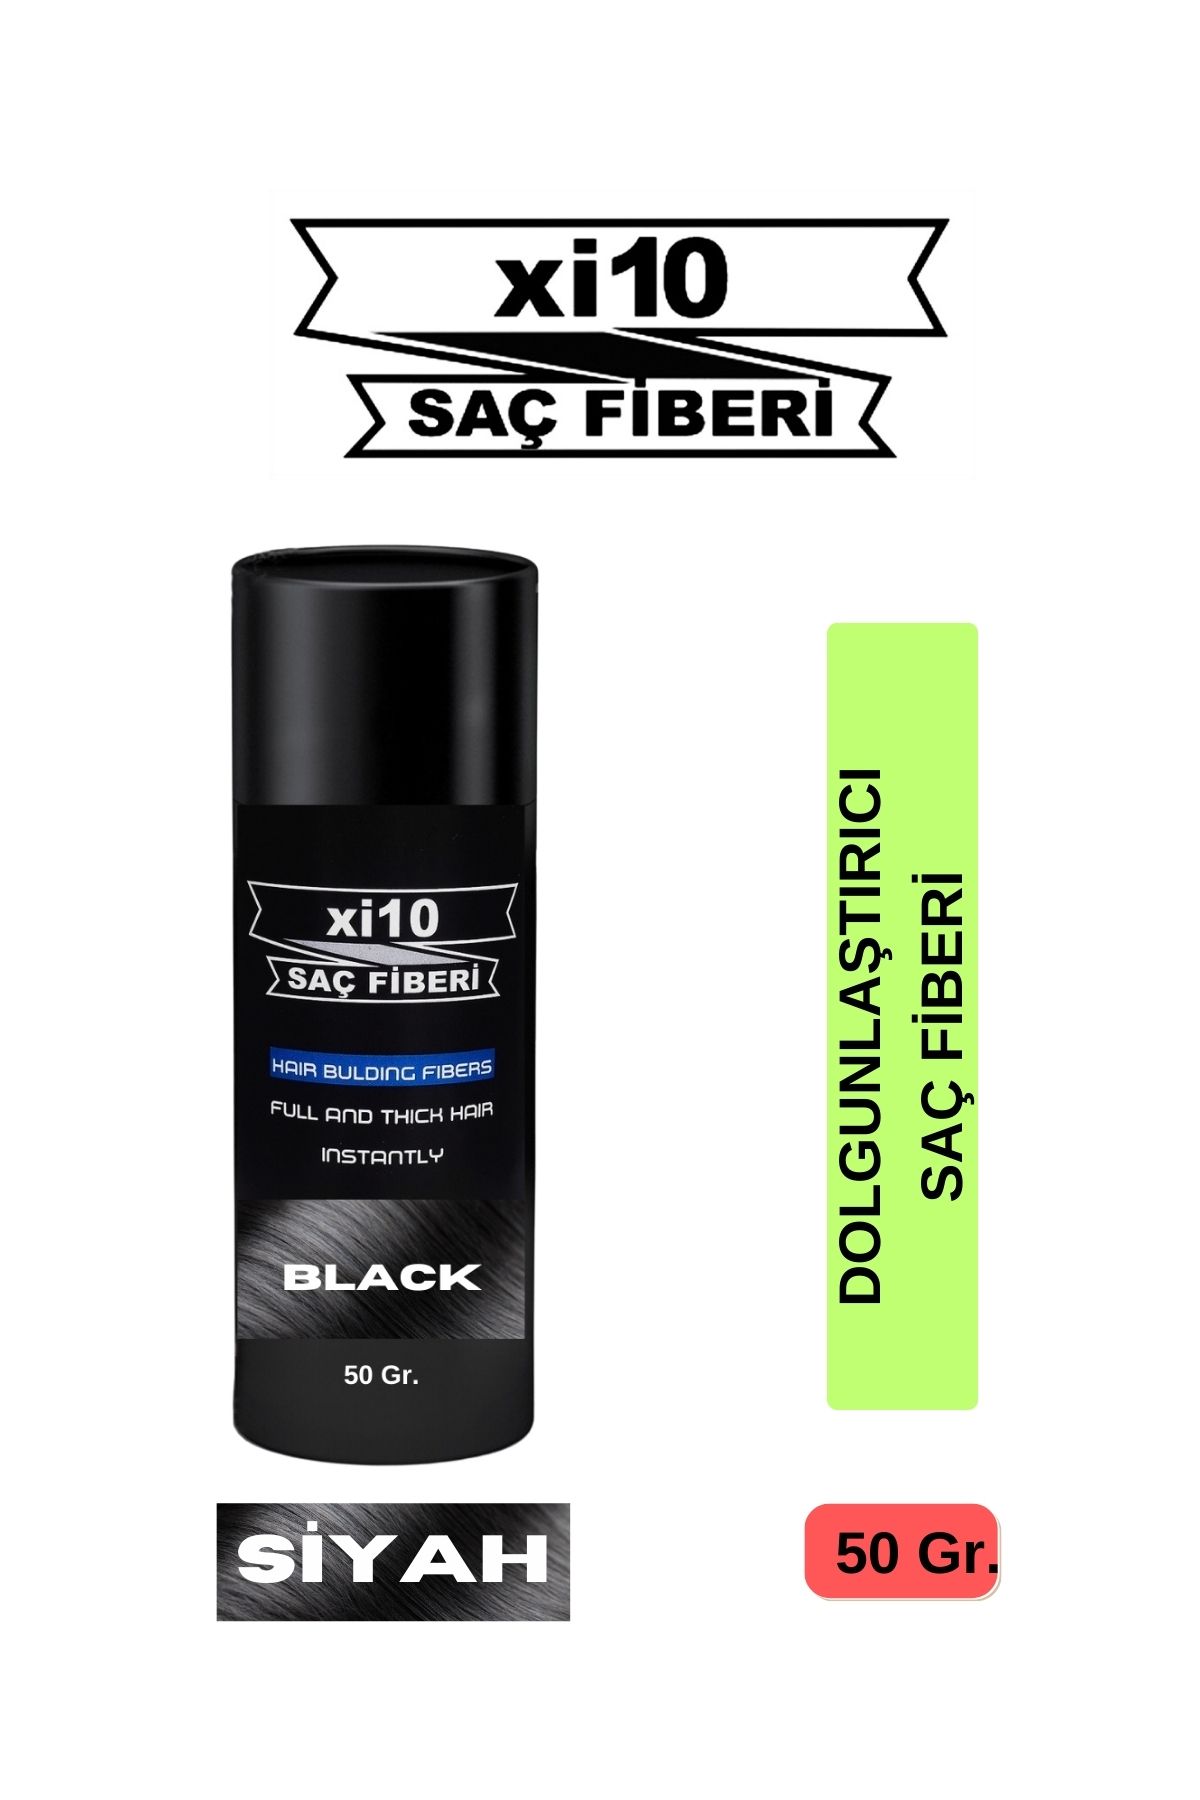 xi10 Saç Dolgunlaştırıcı Siyah Saç Tozu 50 Gr. Black Hair Fiber Topik